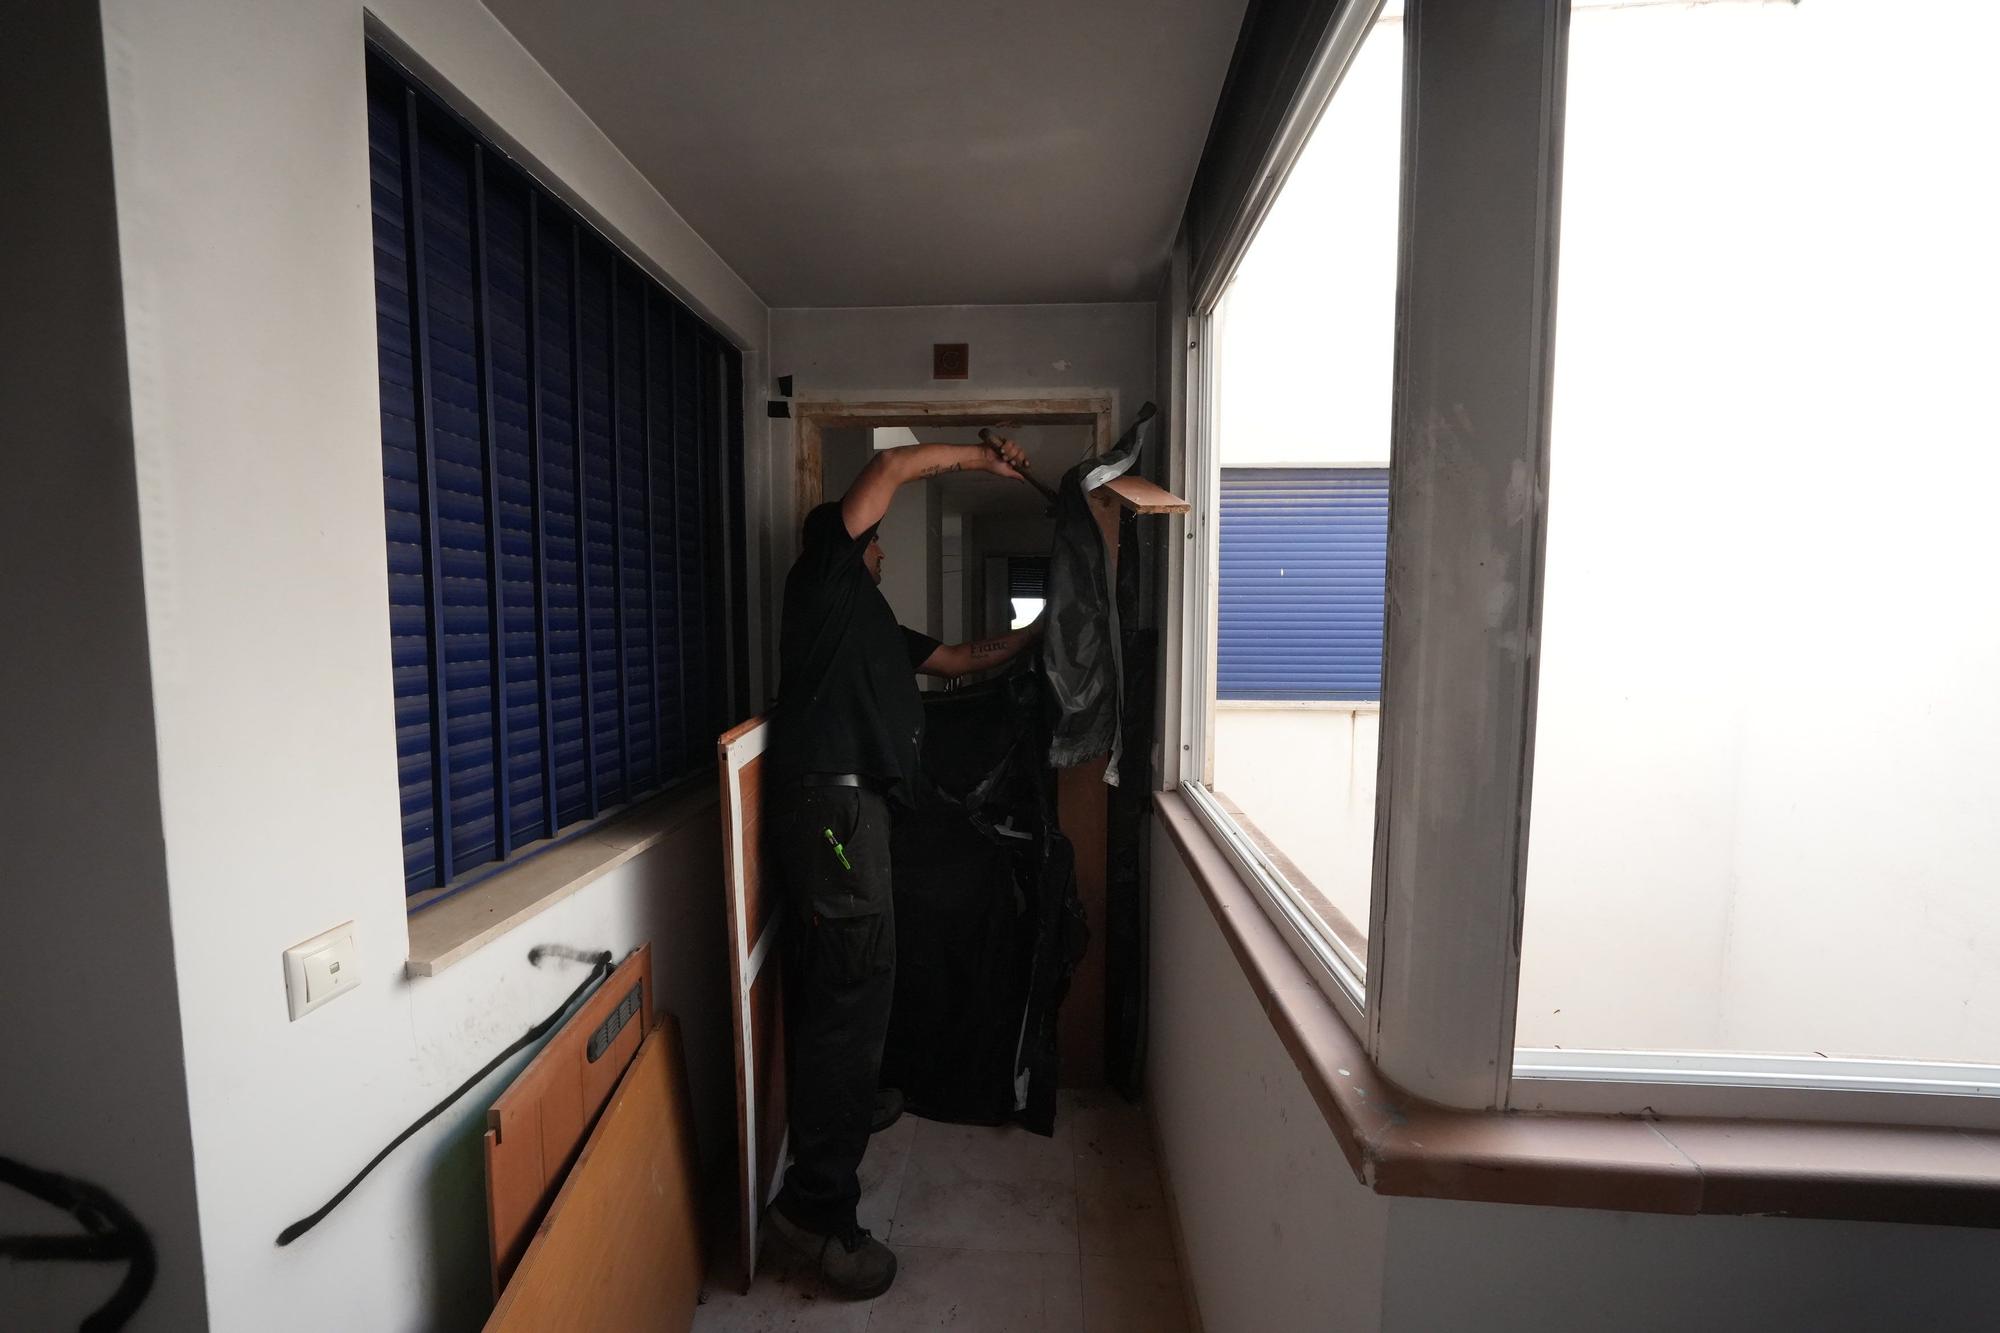 Fotos del operativo para desalojar los okupas de un bloque de pisos en Moncofa